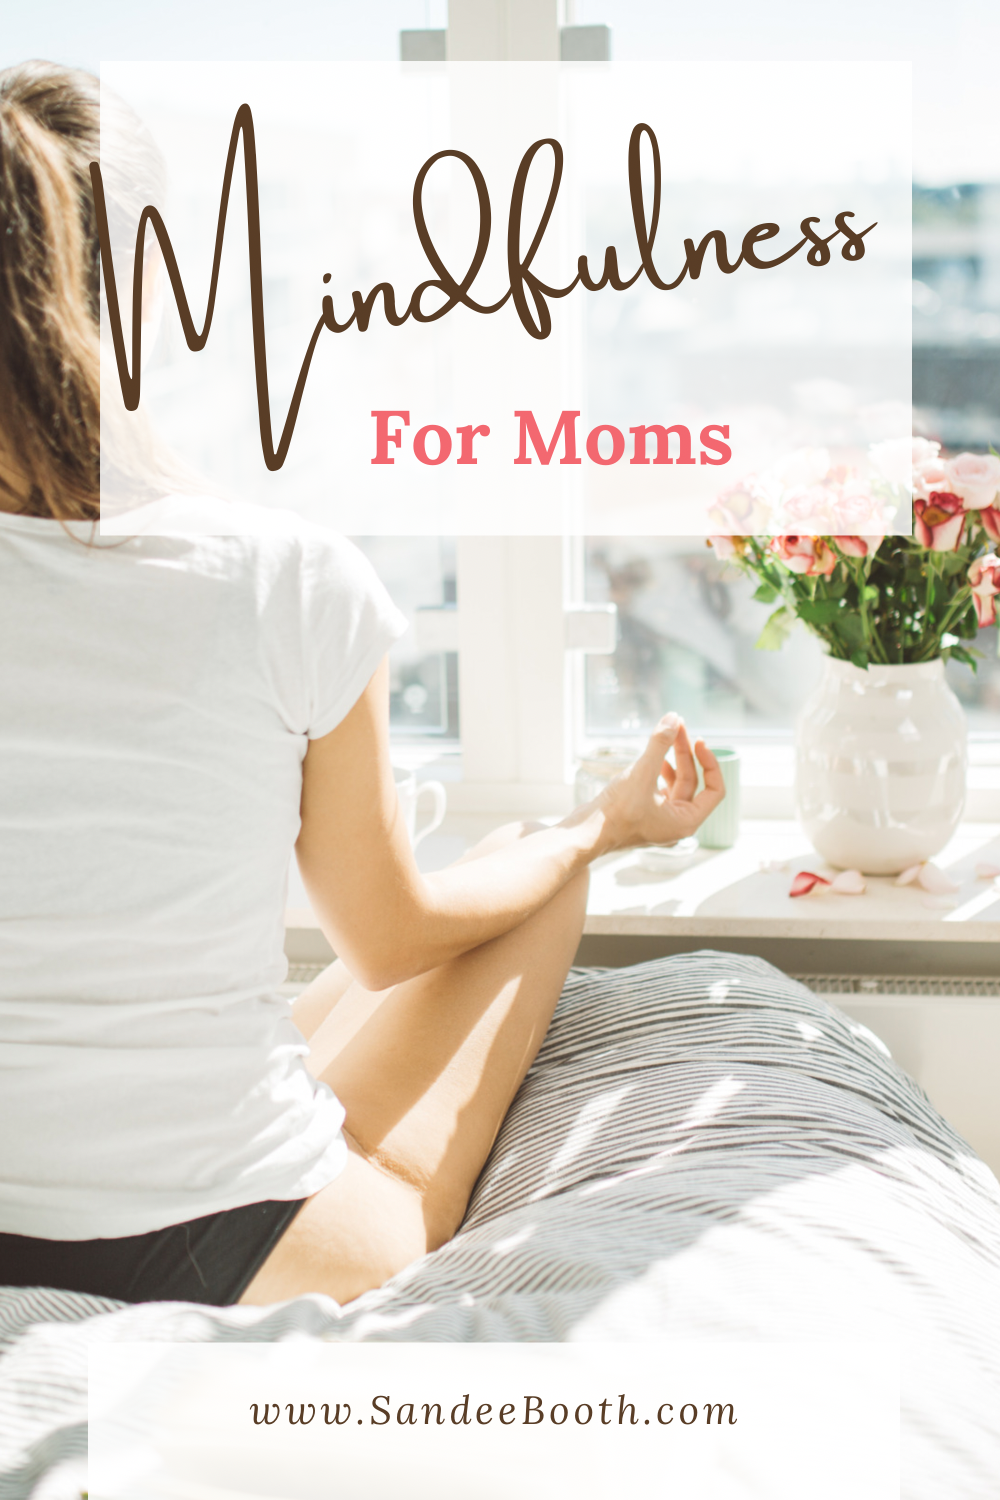 Mindfulness for moms